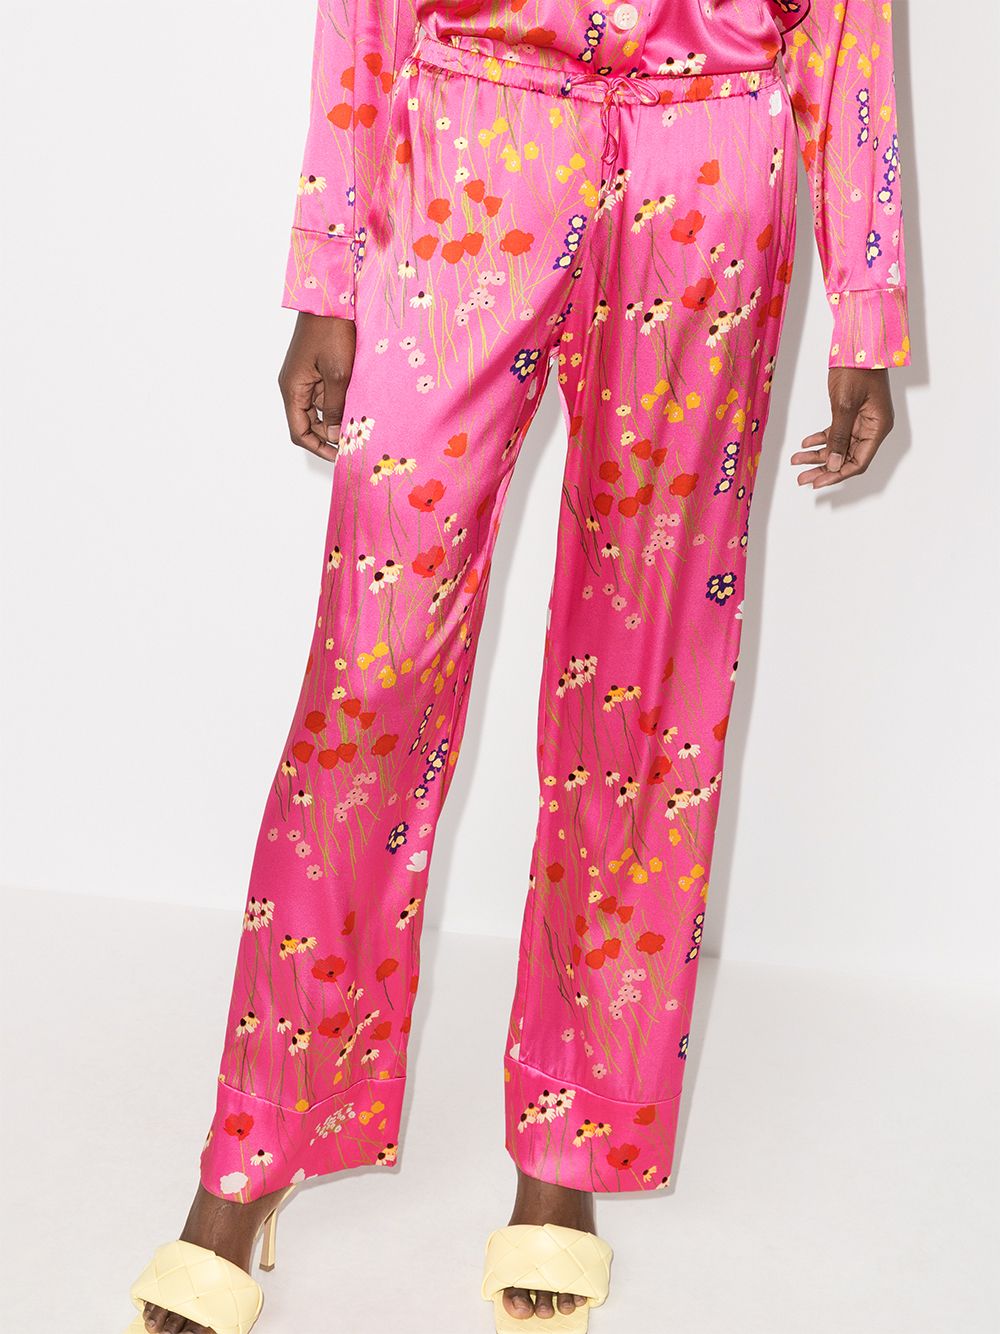 фото Bernadette прямые брюки louis с цветочным принтом